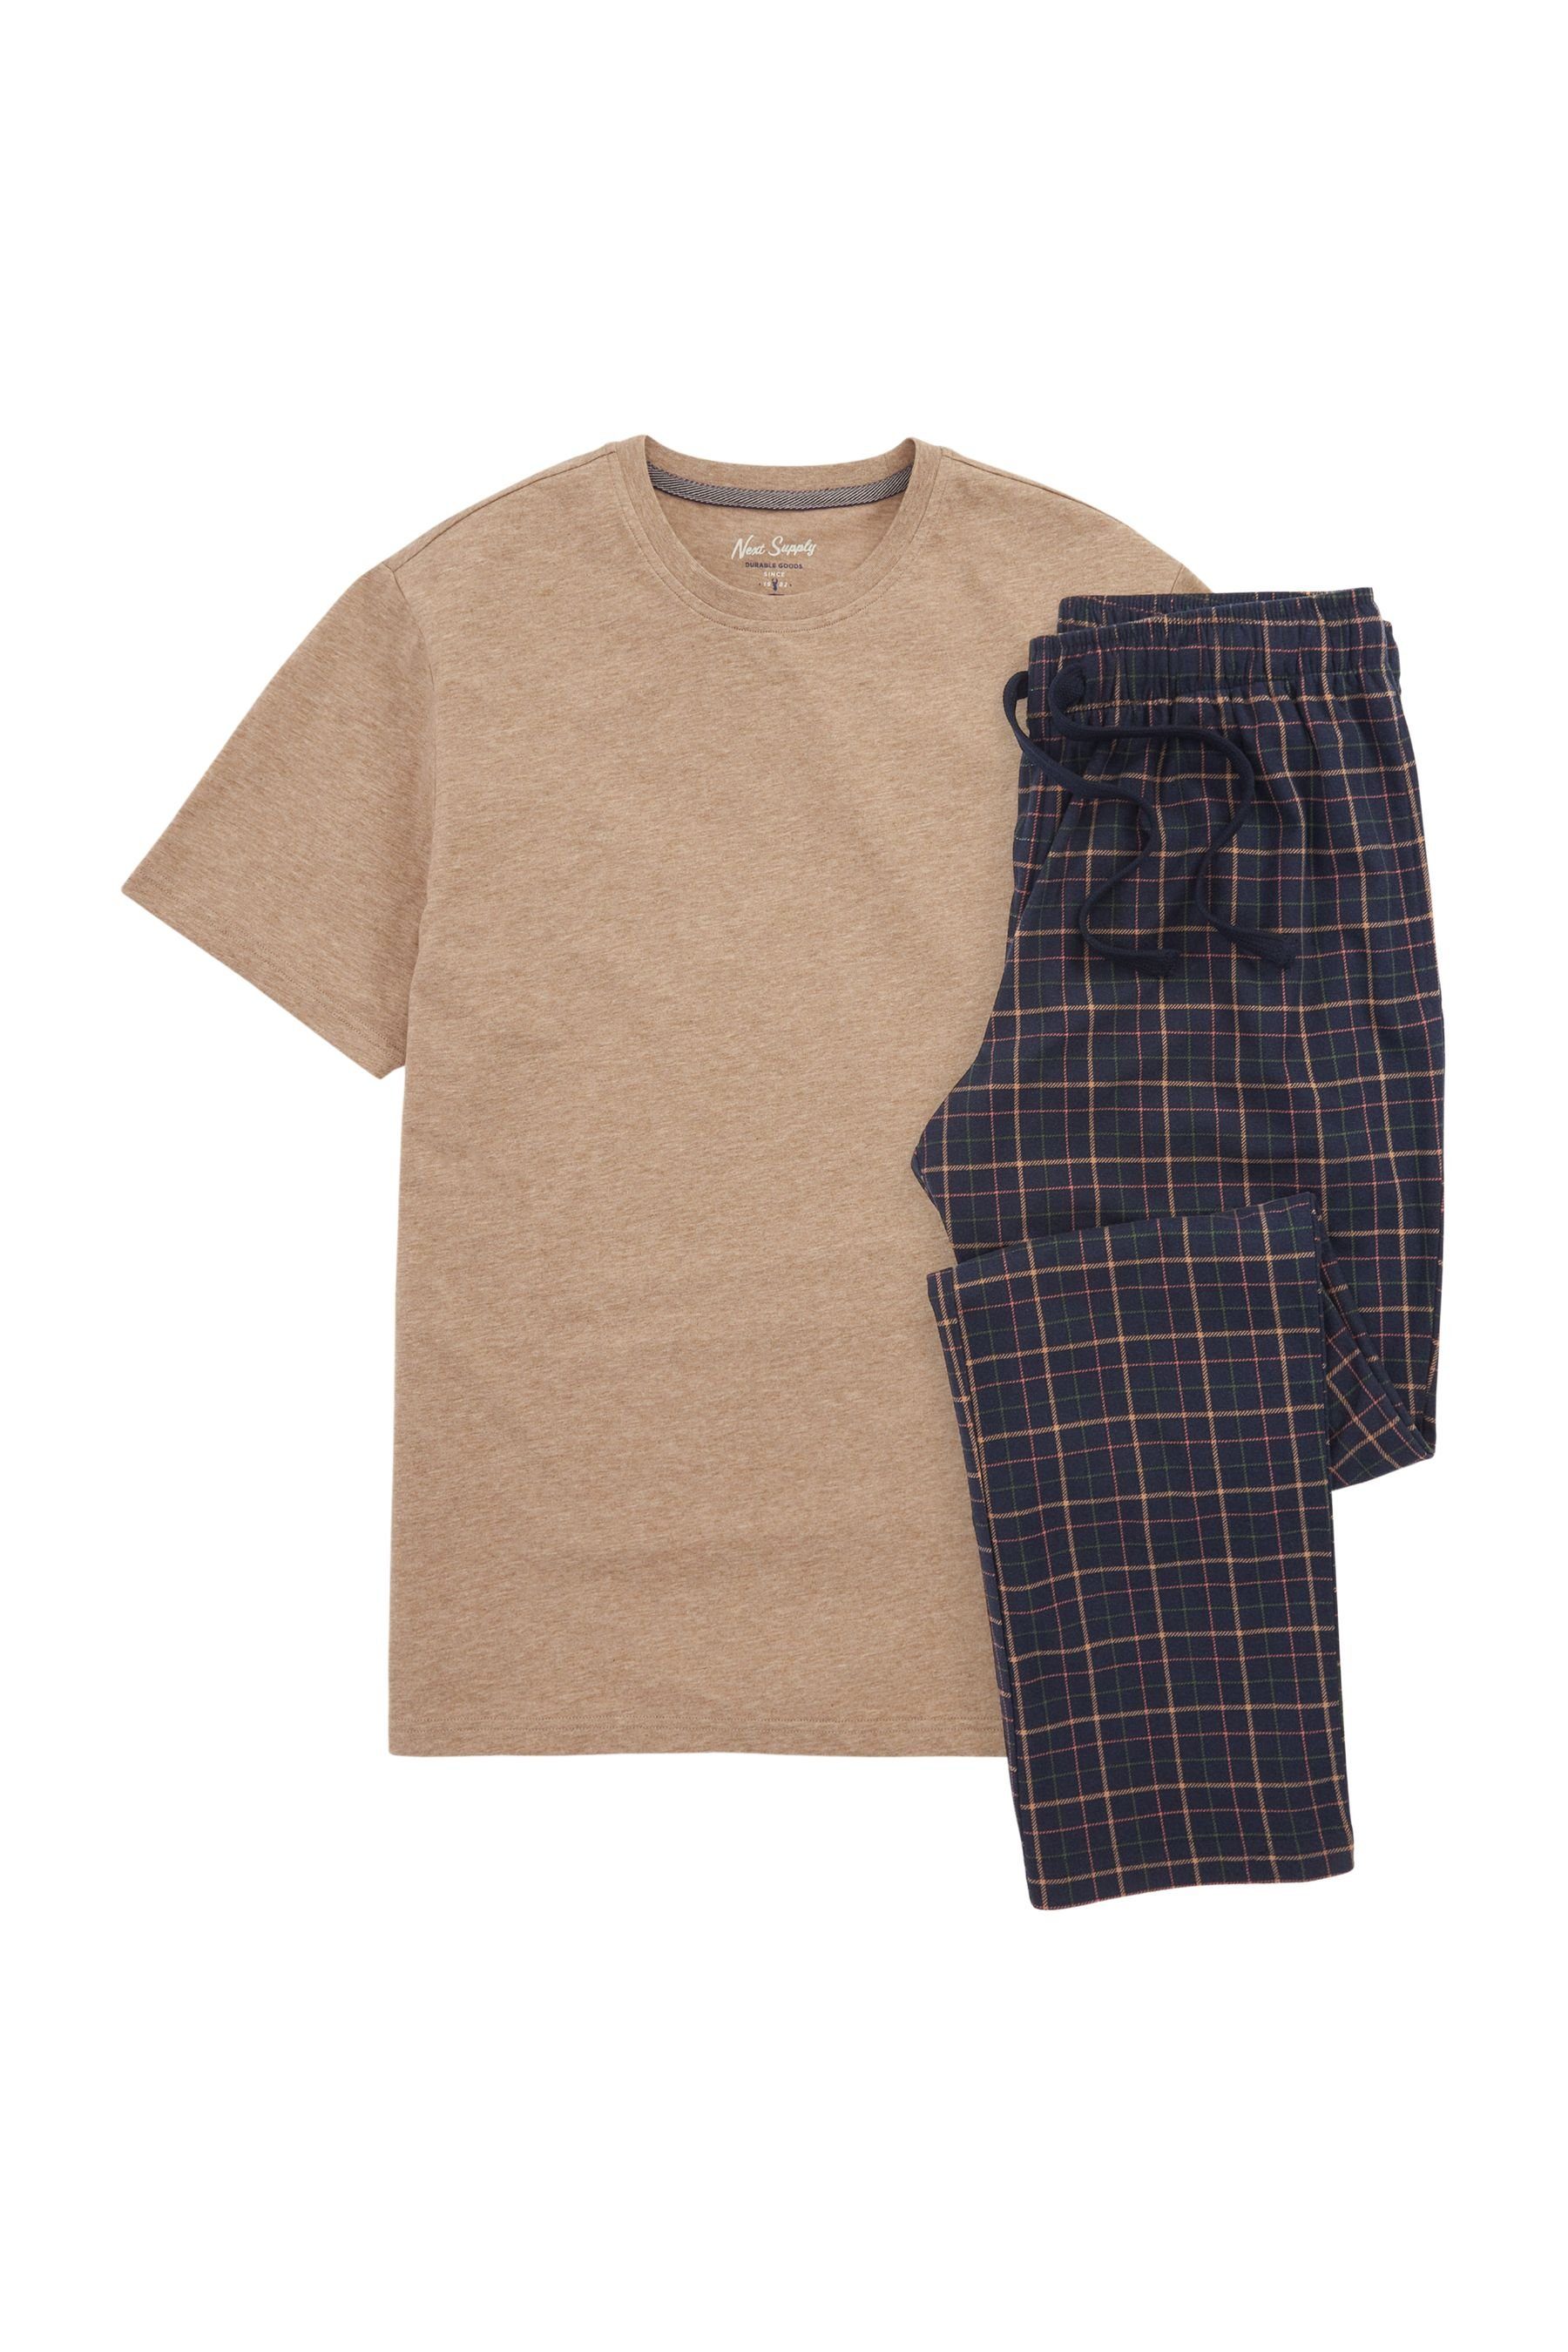 Next Pyjama Bequemer Motionflex Schlafanzug (2 tlg) Tan/Navy Blue Check